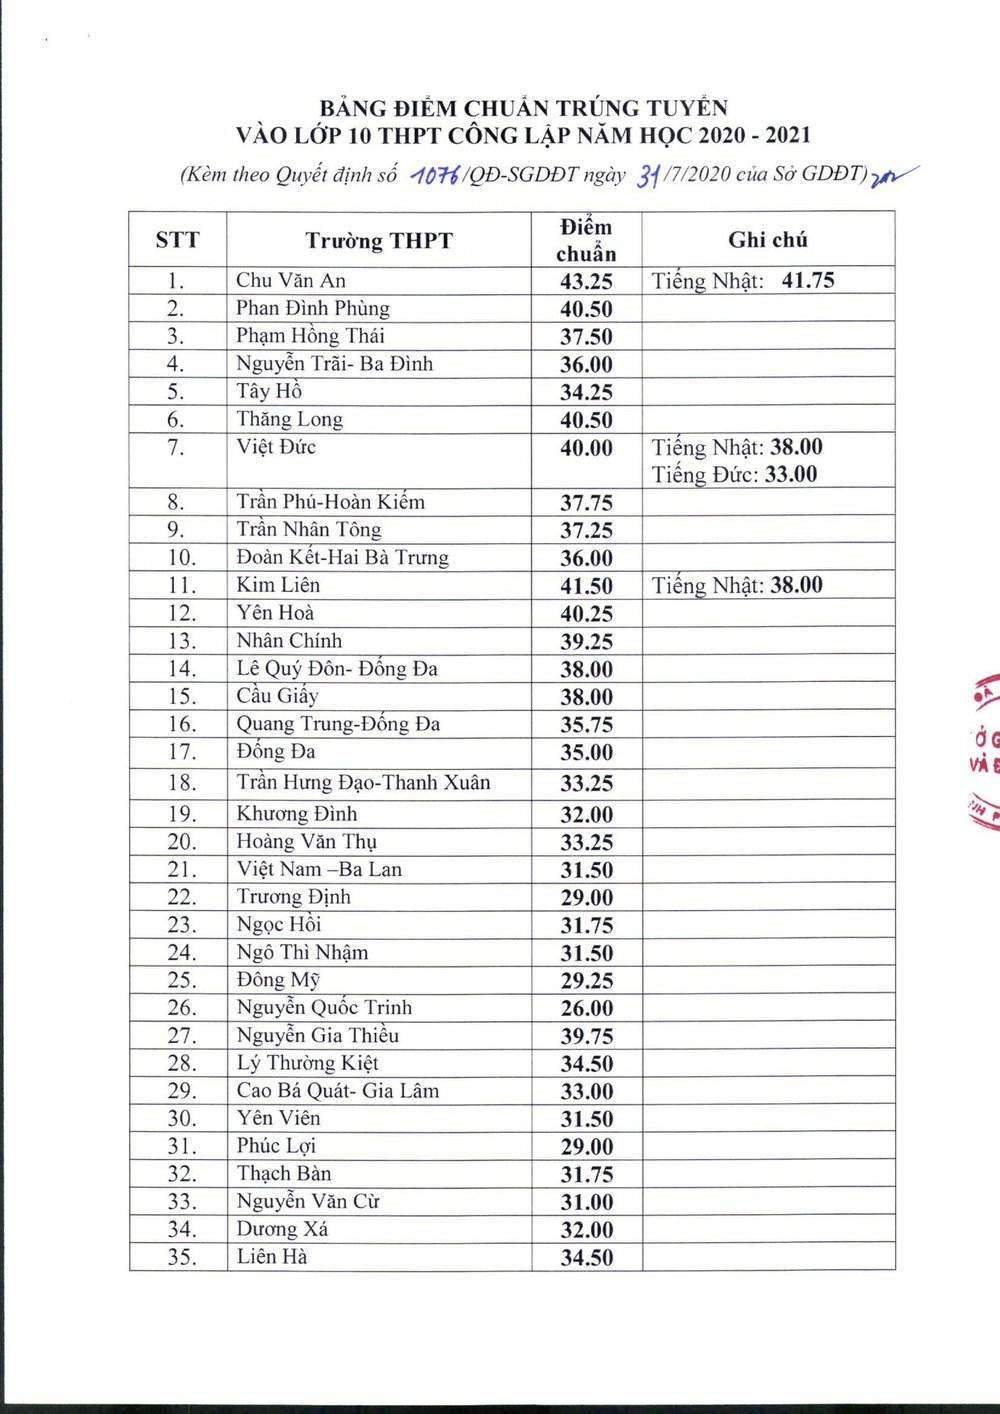  
Trường THPT Chu Văn An có điểm chuẩn cao nhất với 43,25 điểm. (Ảnh: Sở Giáo dục và Đào tạo Hà Nội)